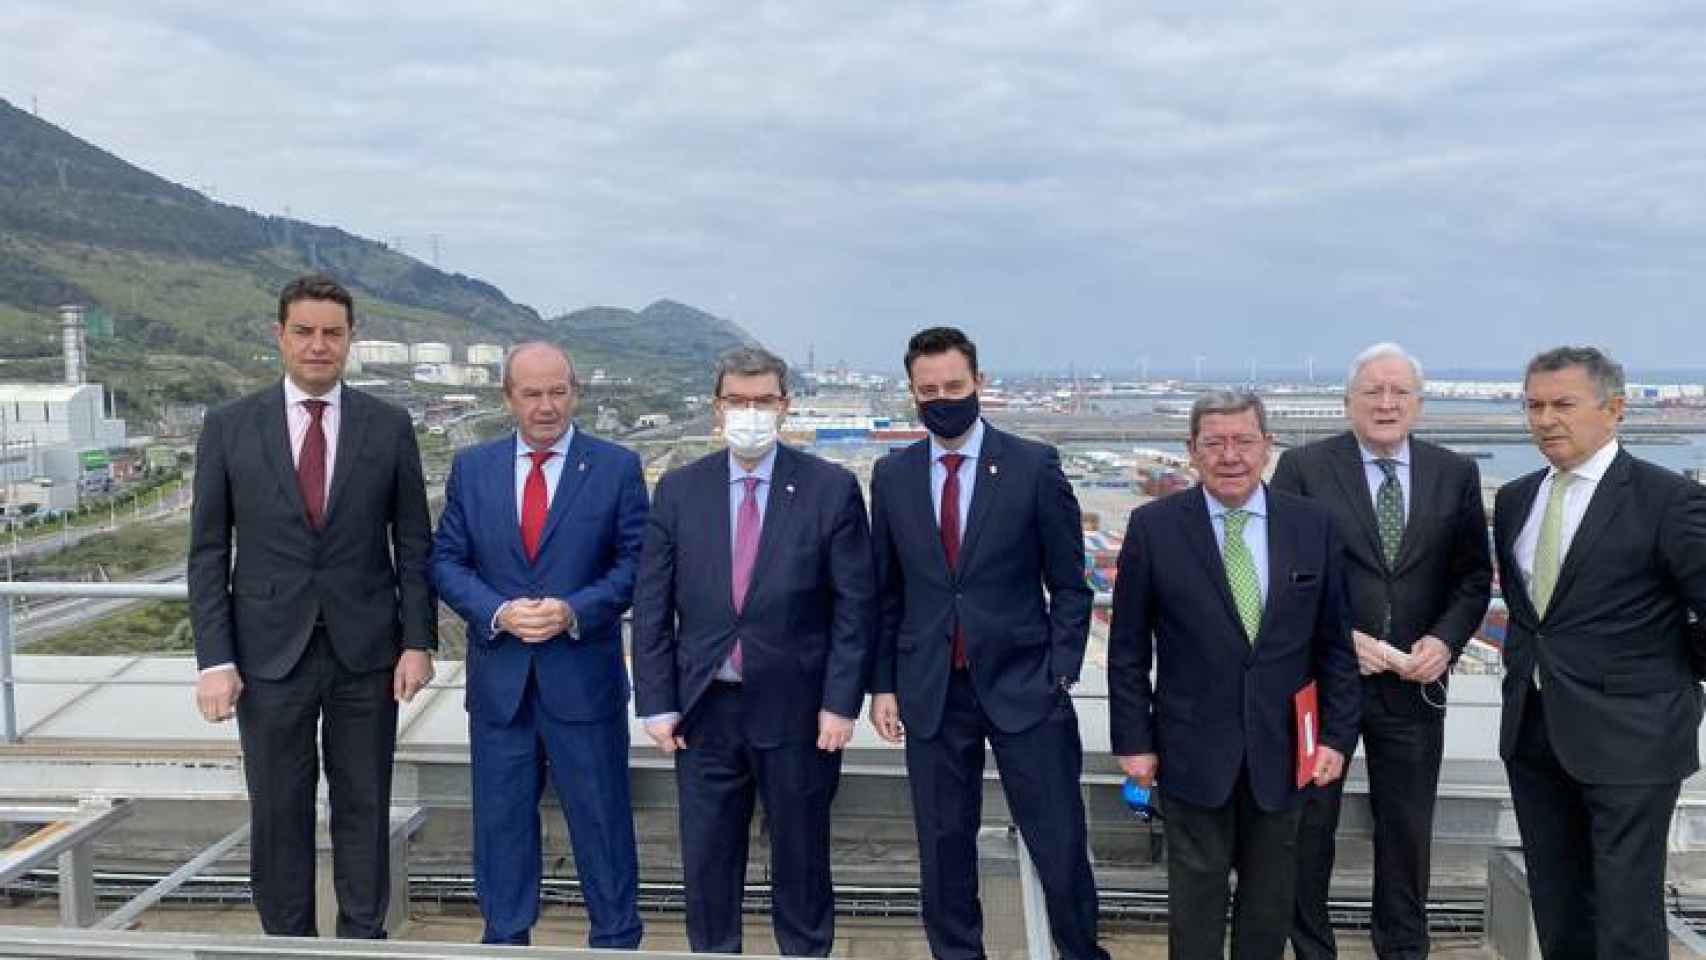 Representantes políticos de Burgos se han reunido con la Autoridad Portuaria de Bilbao